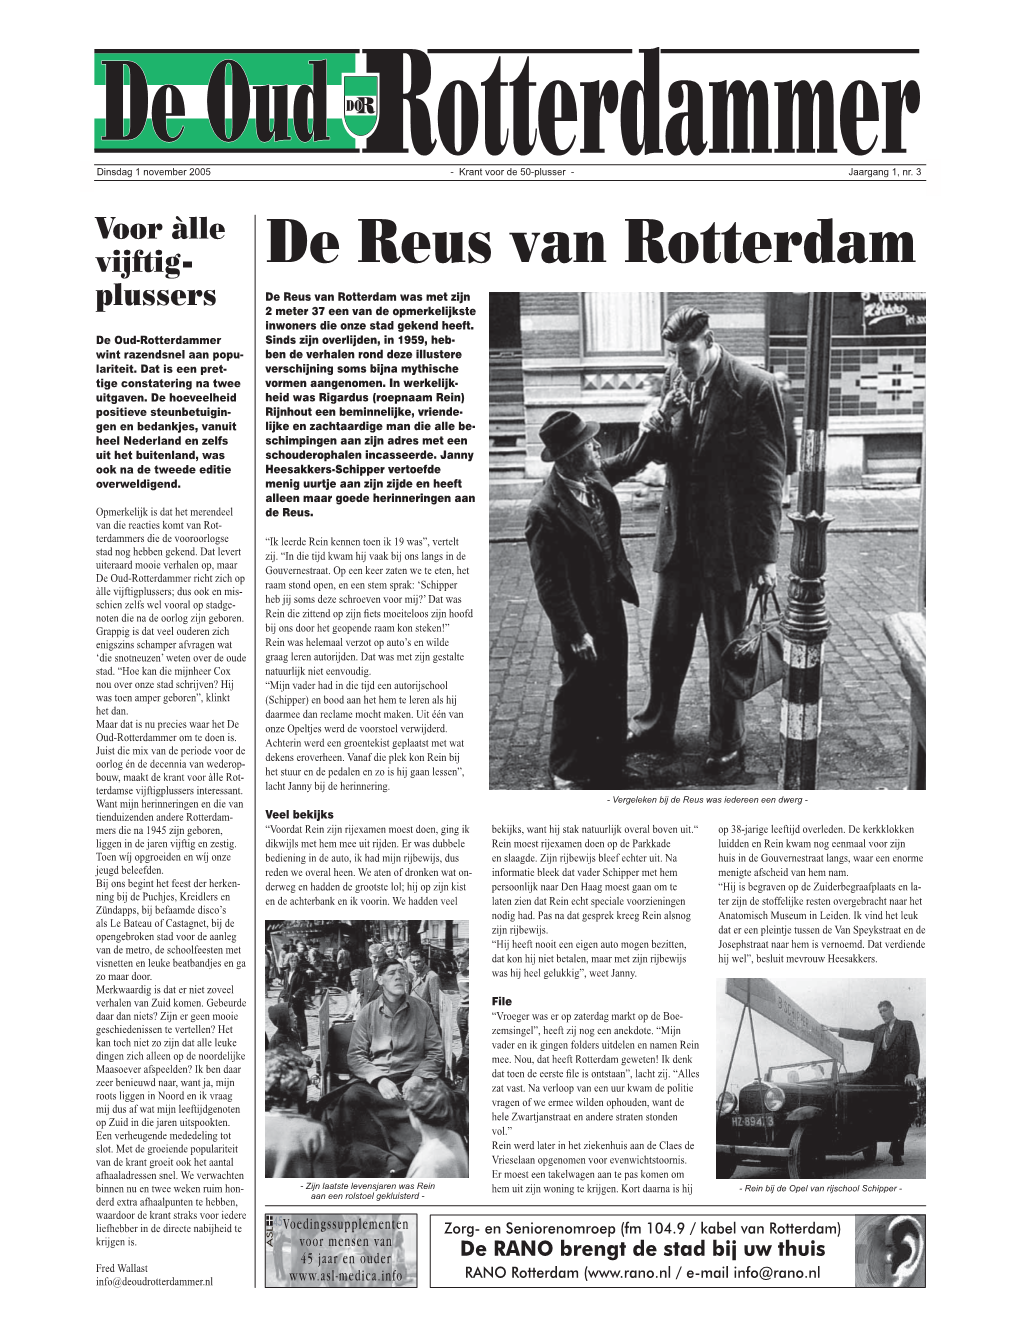 De Reus Van Rotterdam